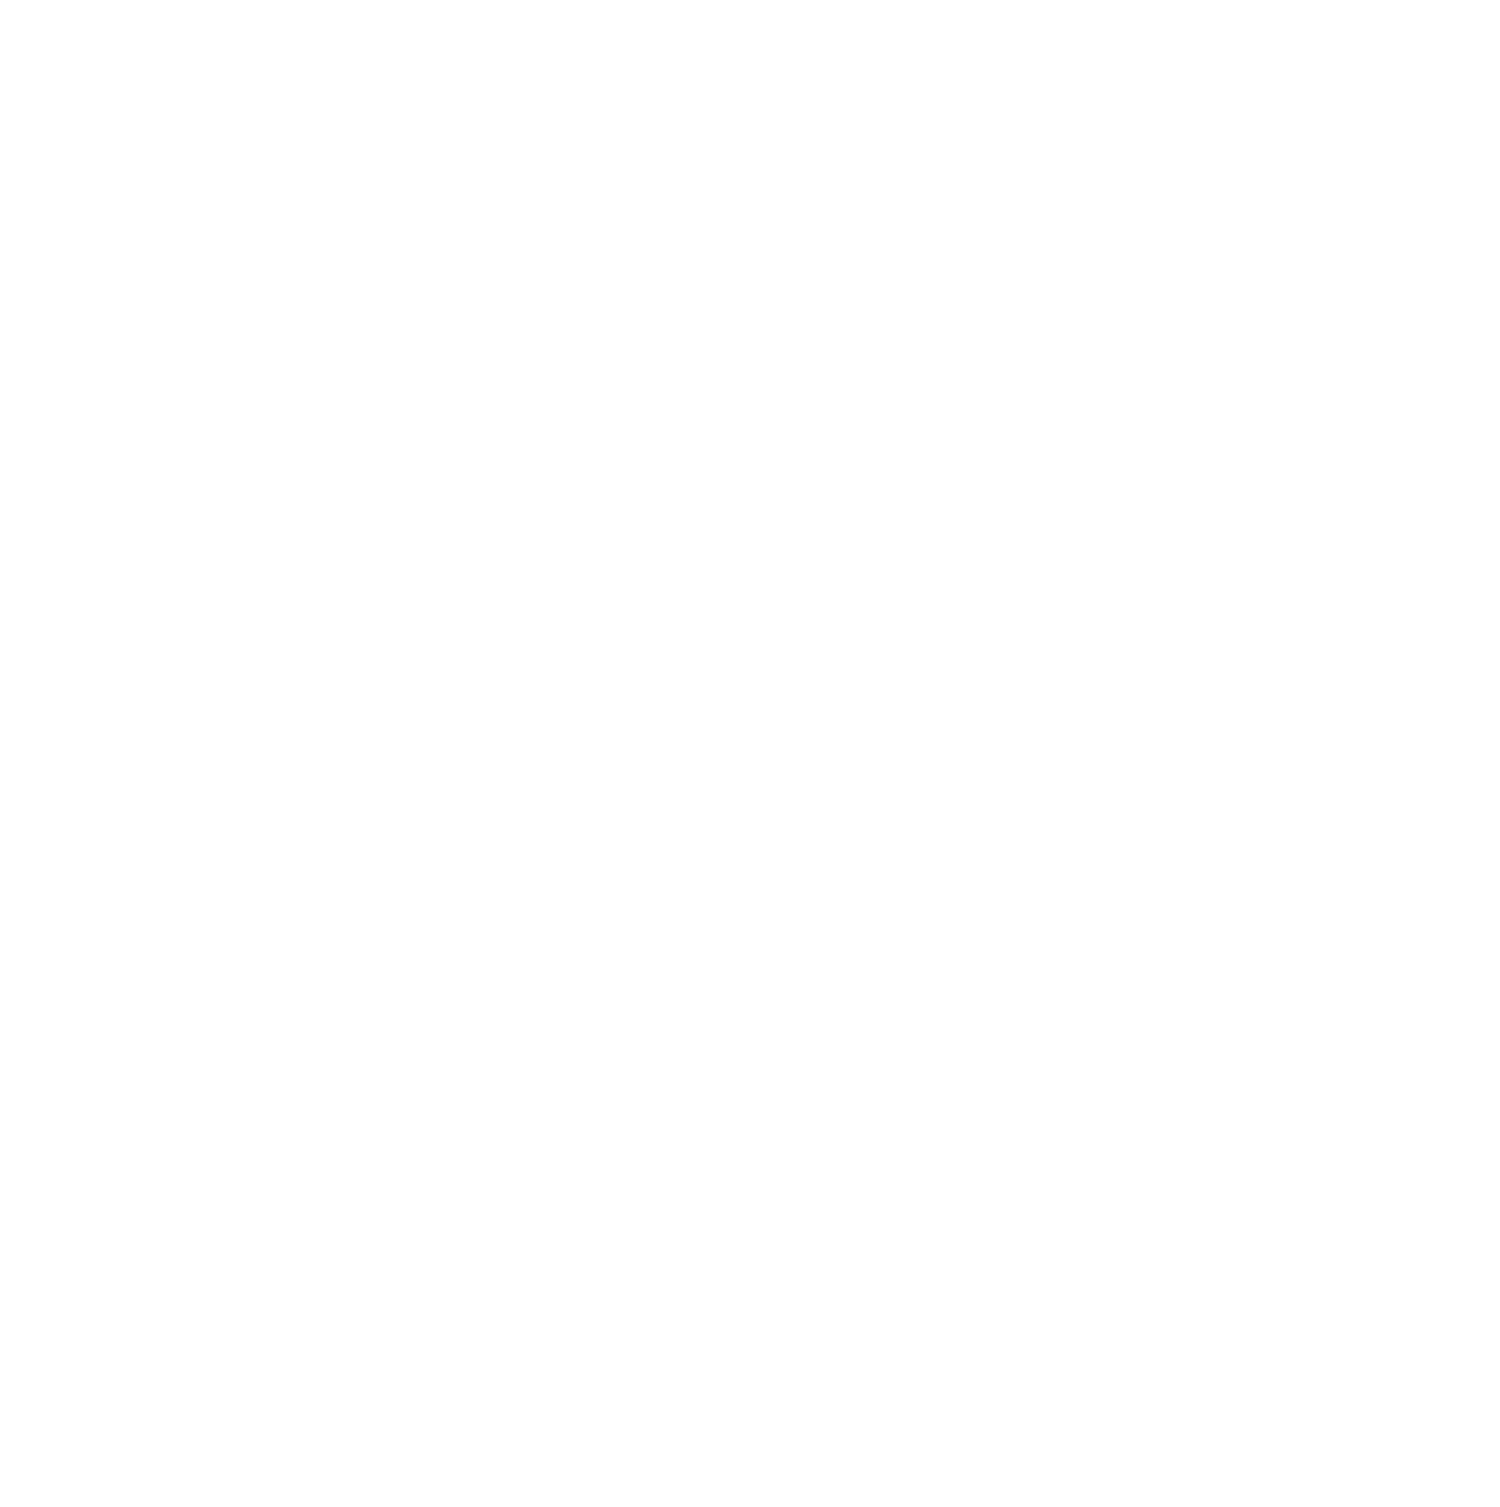 TRI-CITY BARBELL CLUB